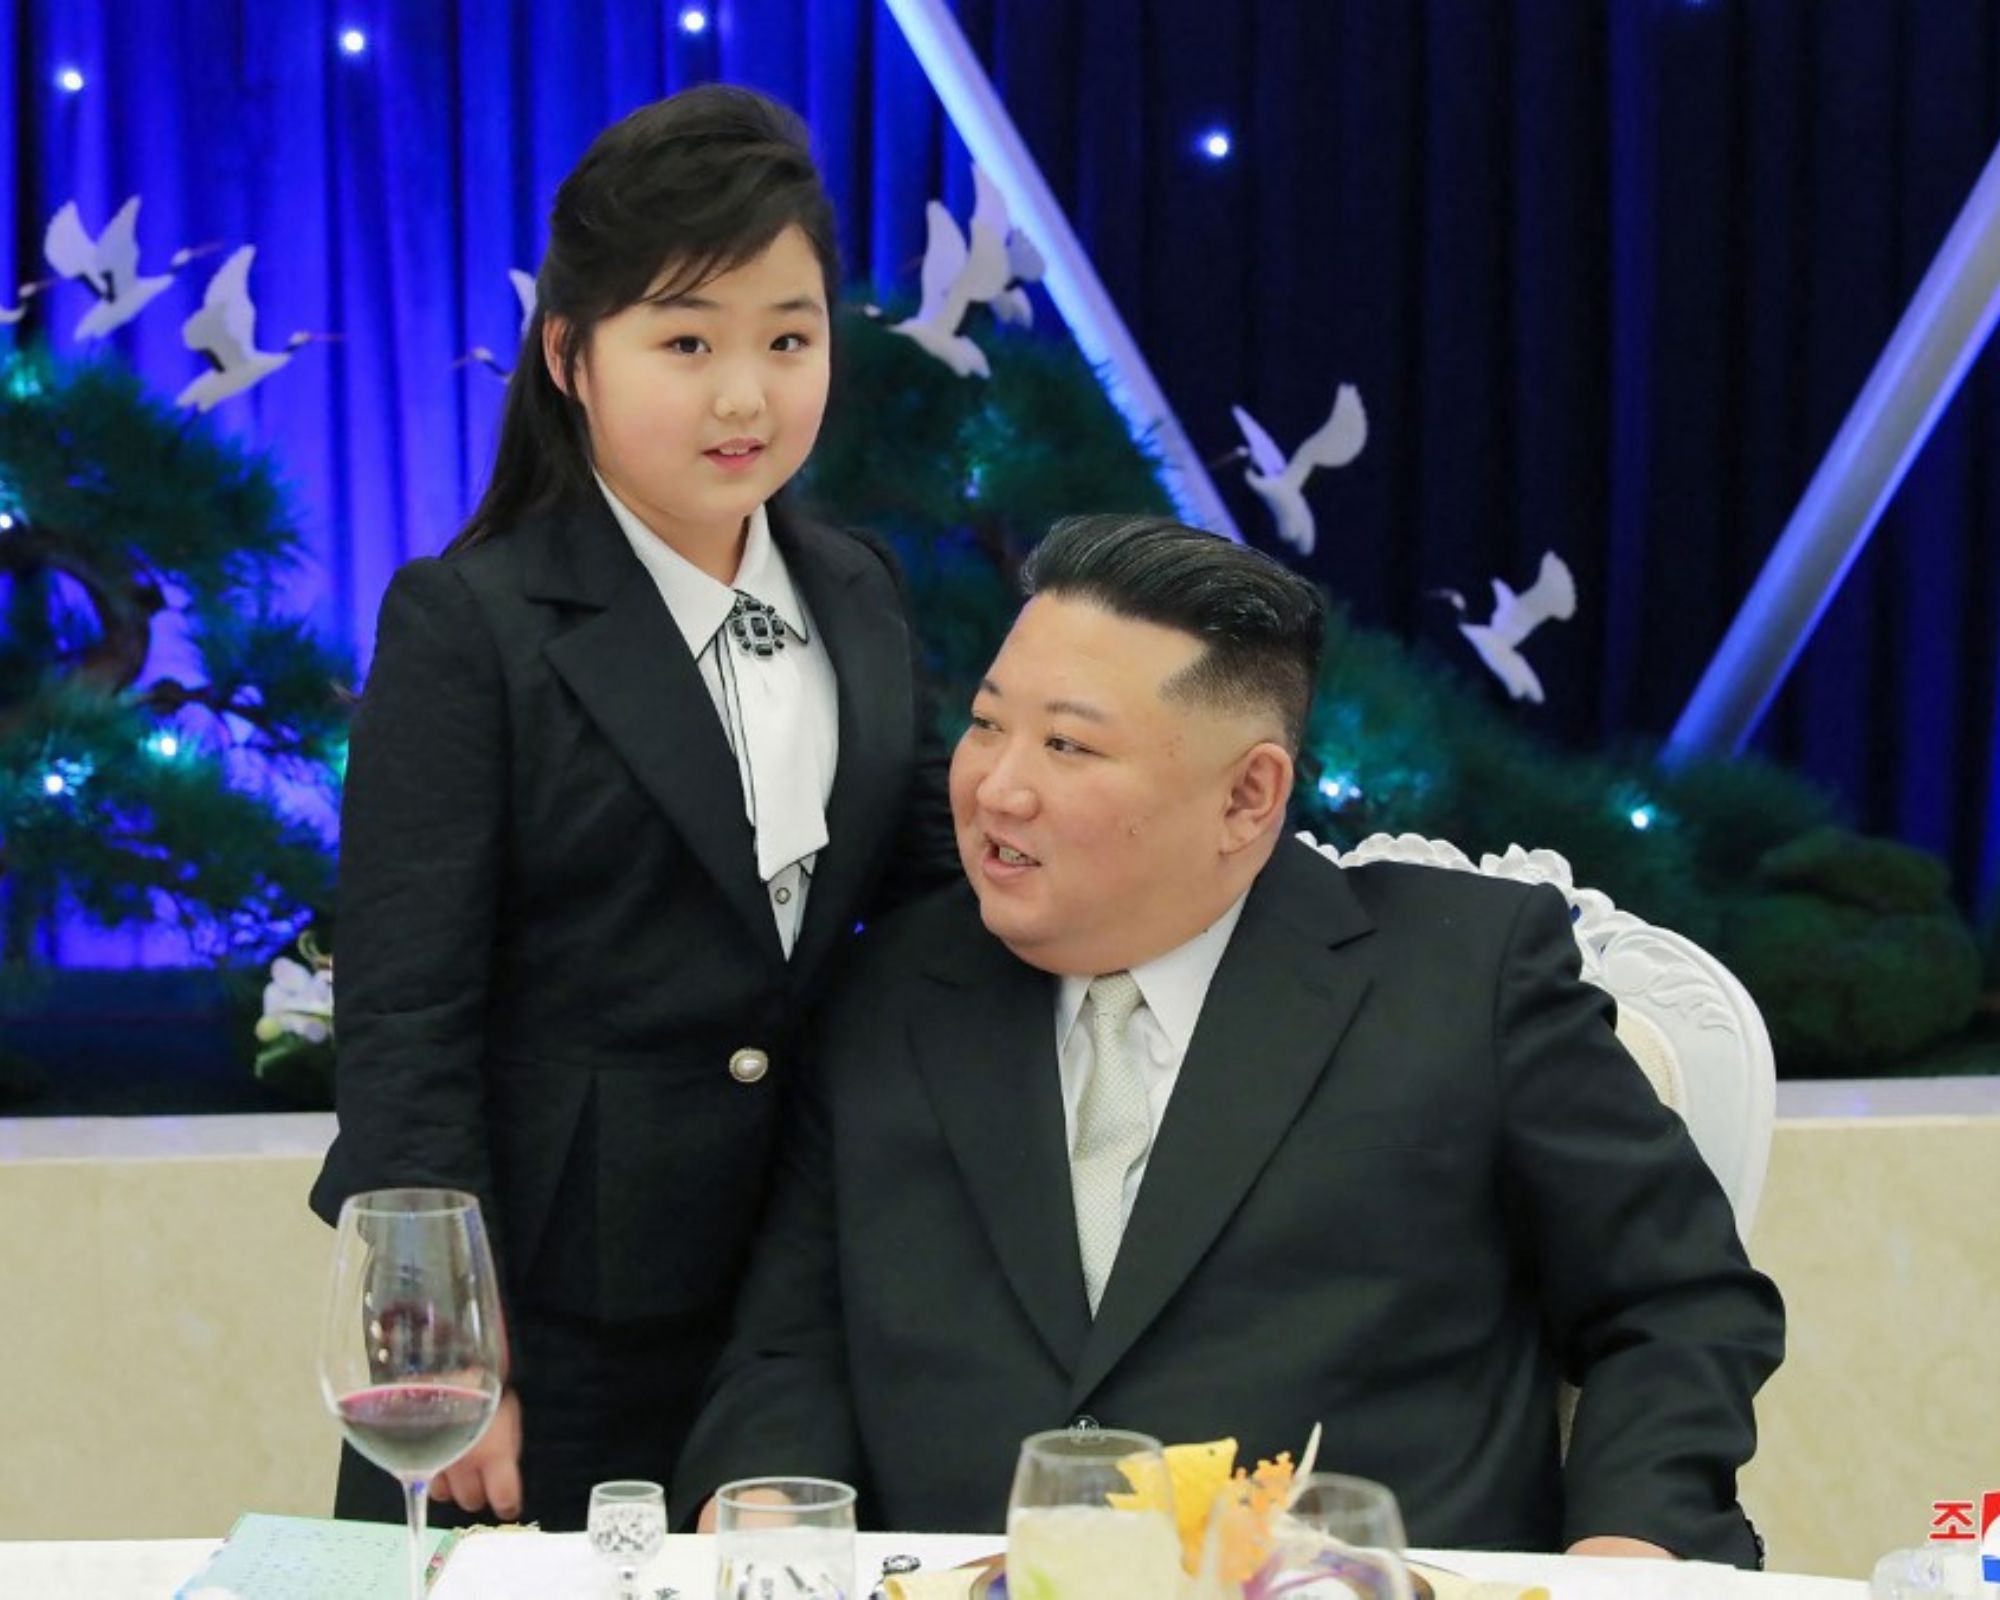 رهبر کره شمالی و دخترش.jpg